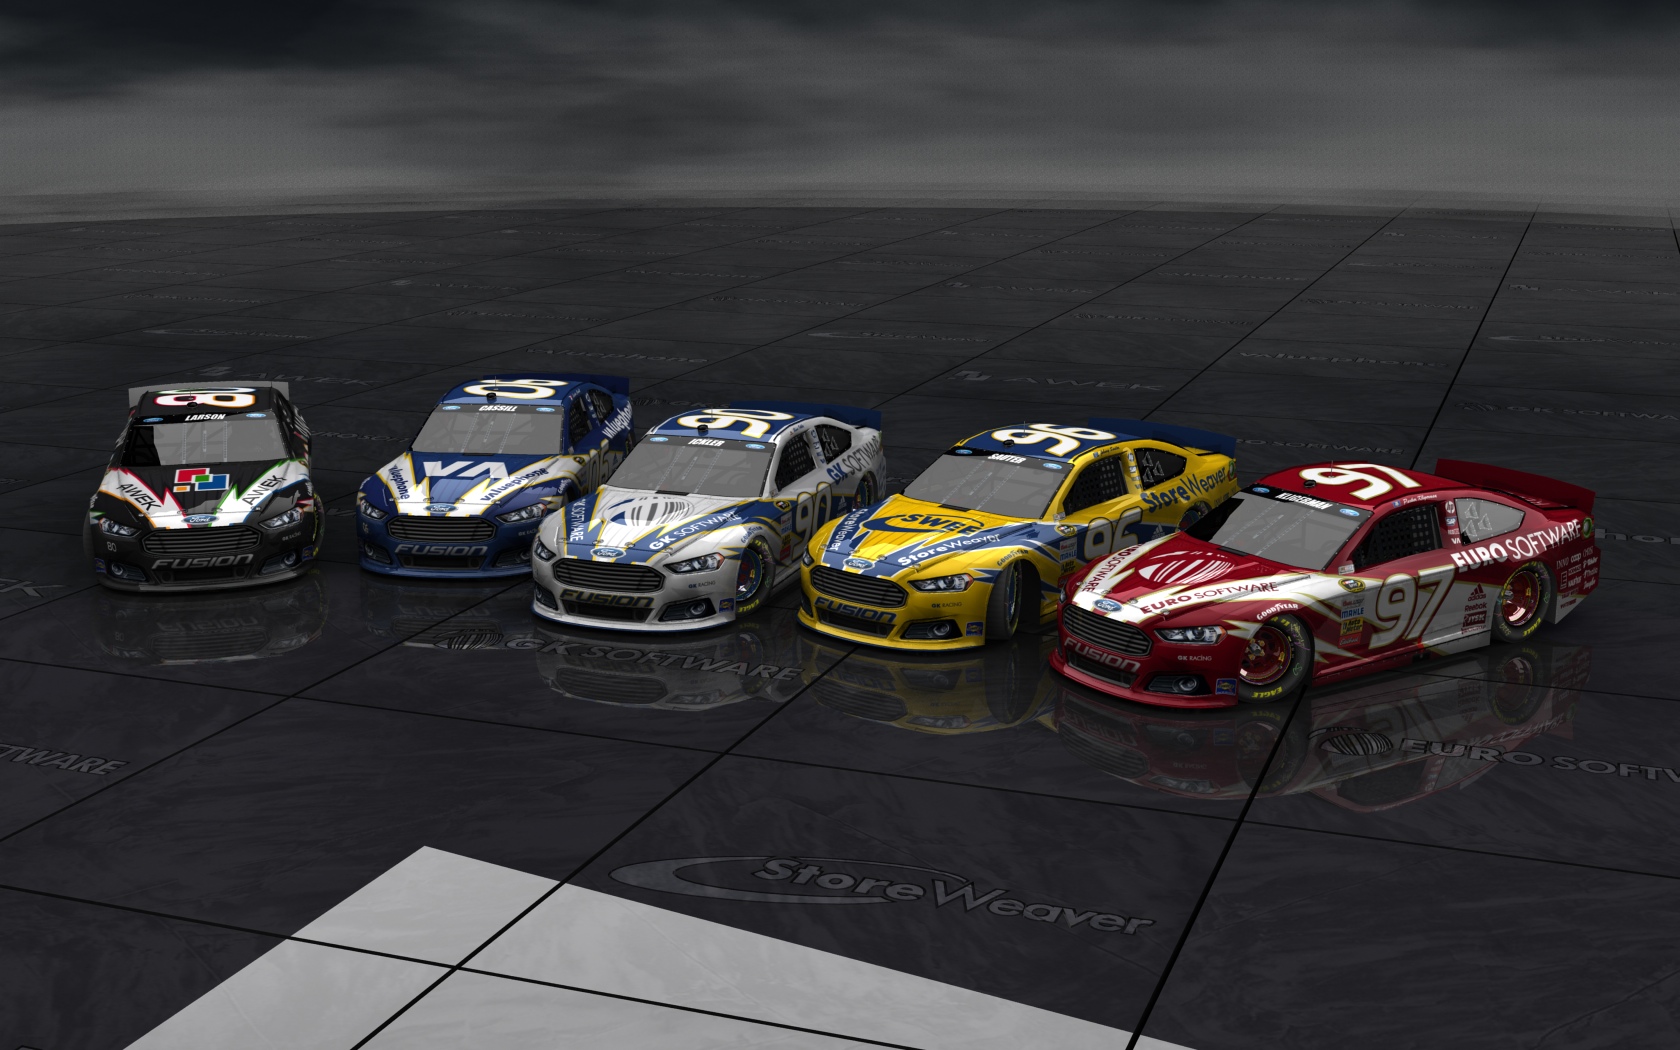 2013 GK Racing, Alle fünf Fahrzeuge (Blick seitlich versetzt von vorn)